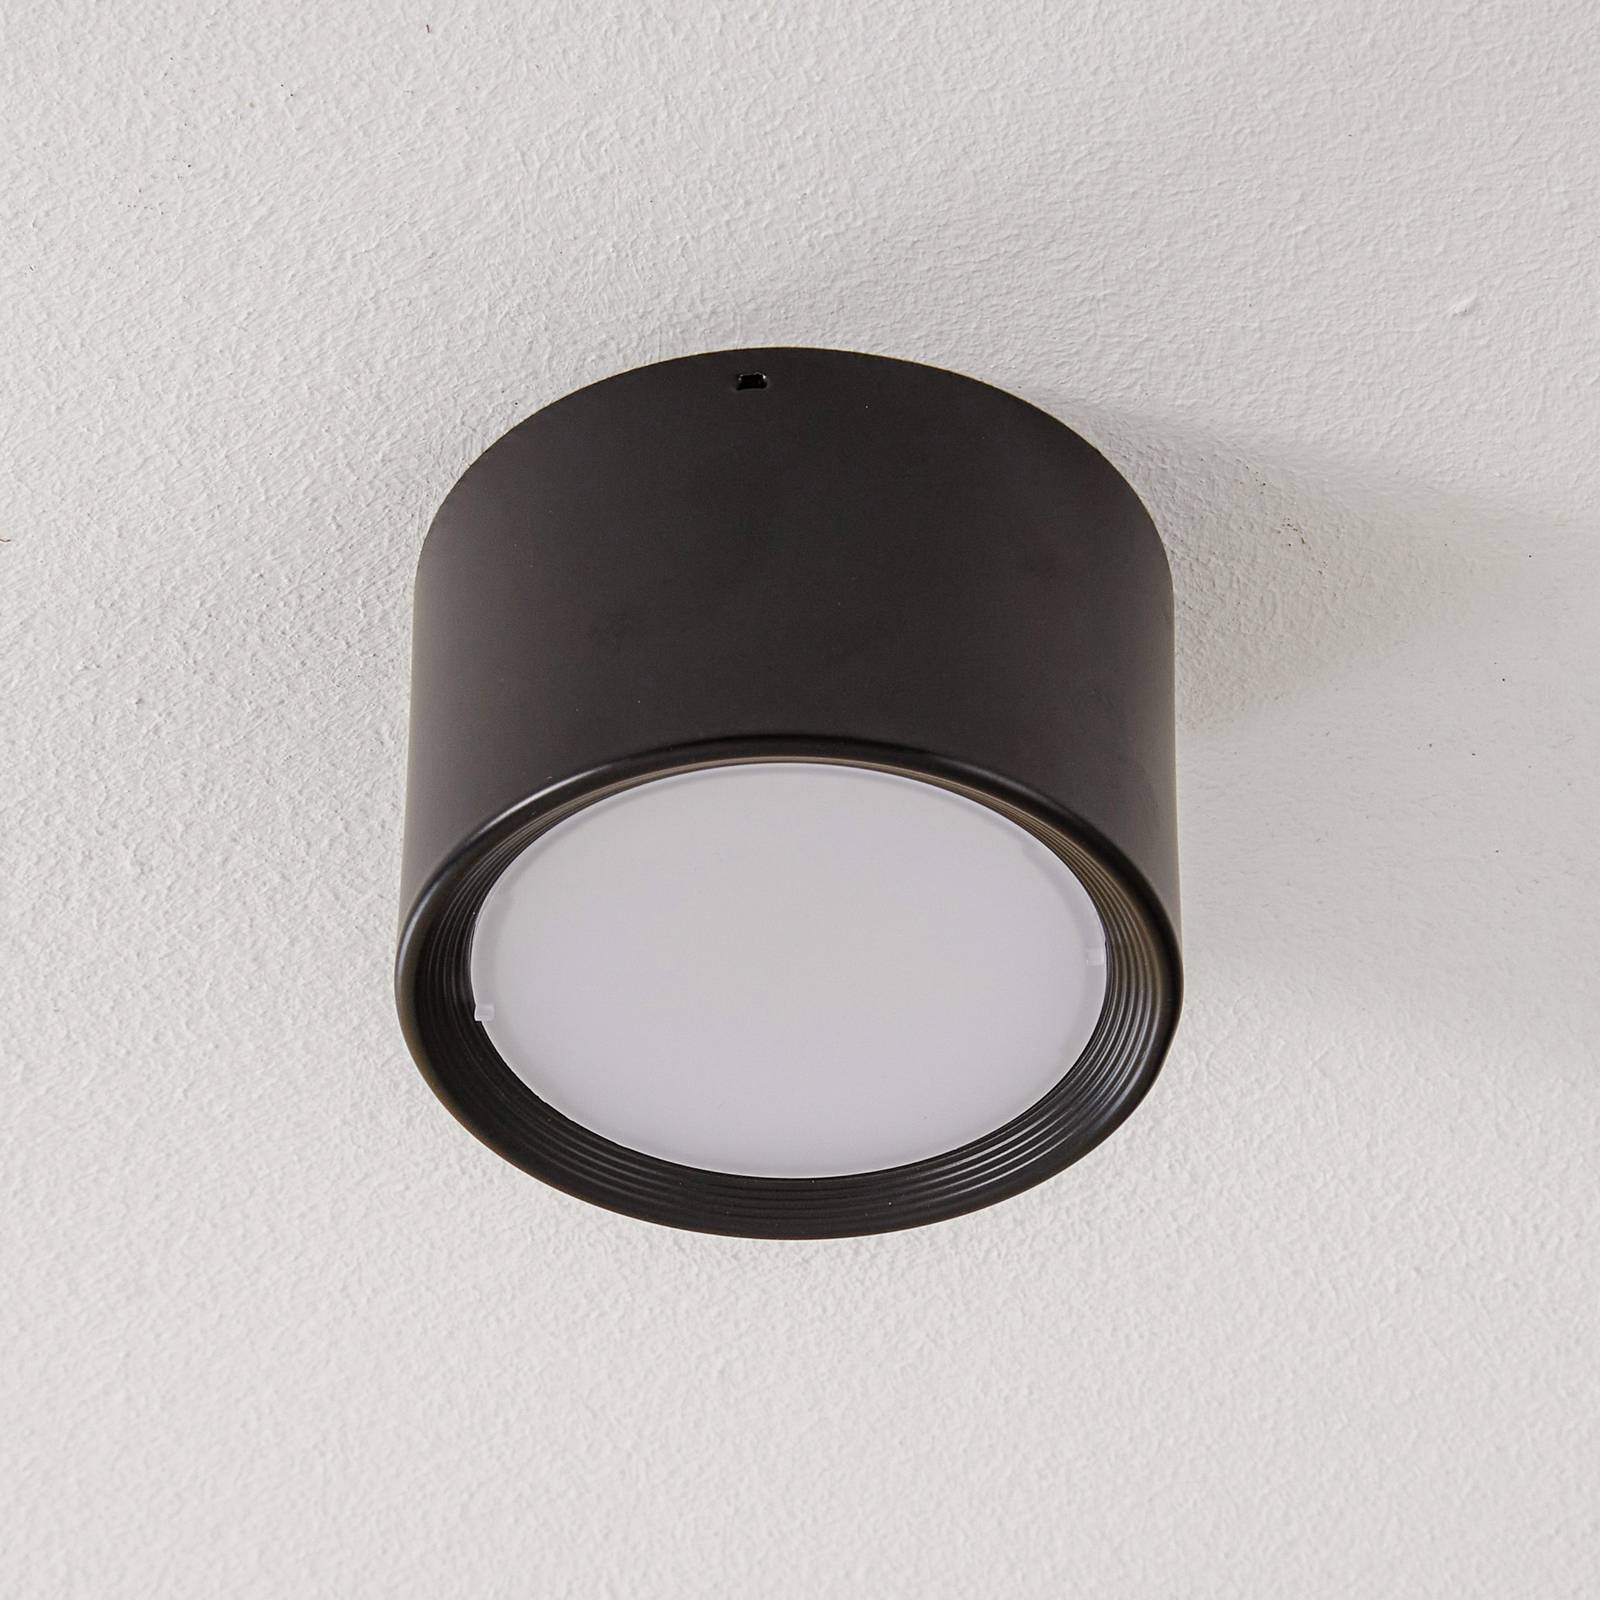 LED-Downlight Ita in Schwarz mit Diffusor, Ø 12 cm von Euluna